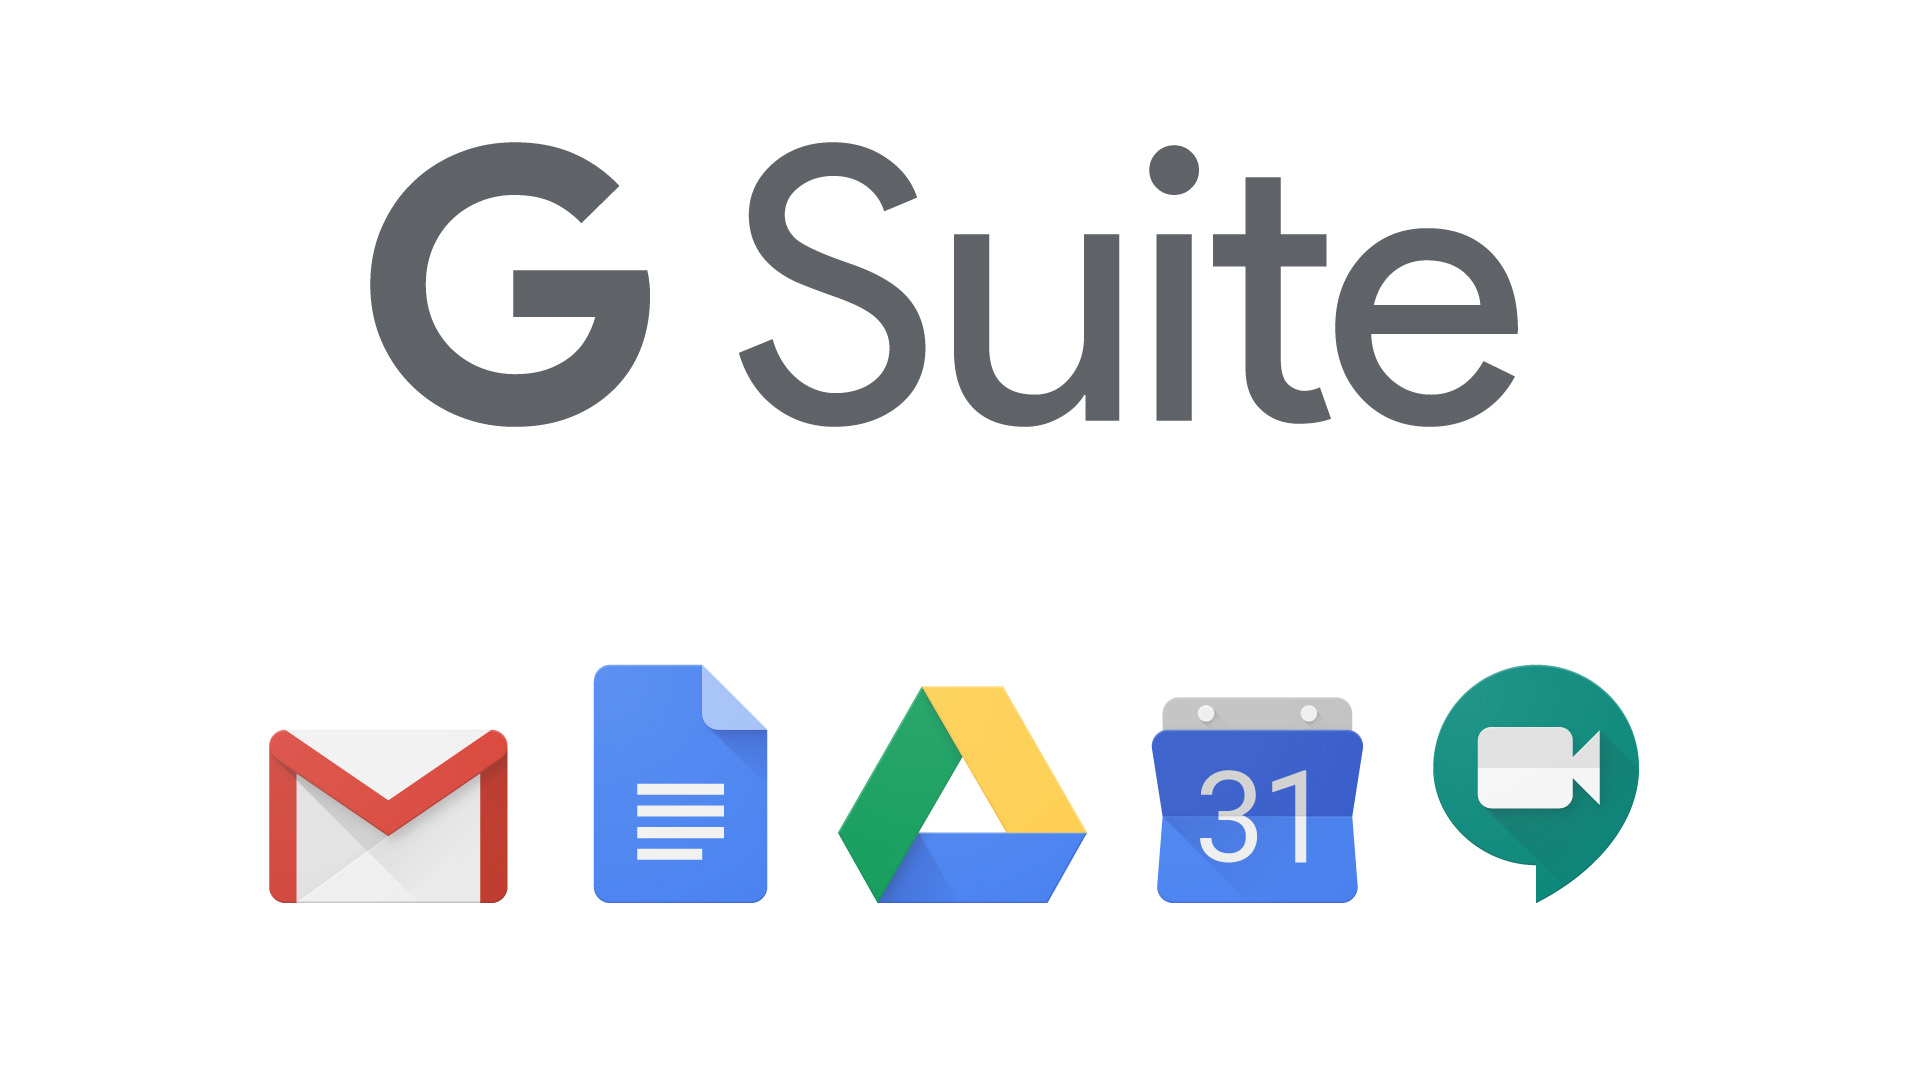 Adiós a los servicios gratuitos de G Suite: Google le obligará a pagar por Workspace